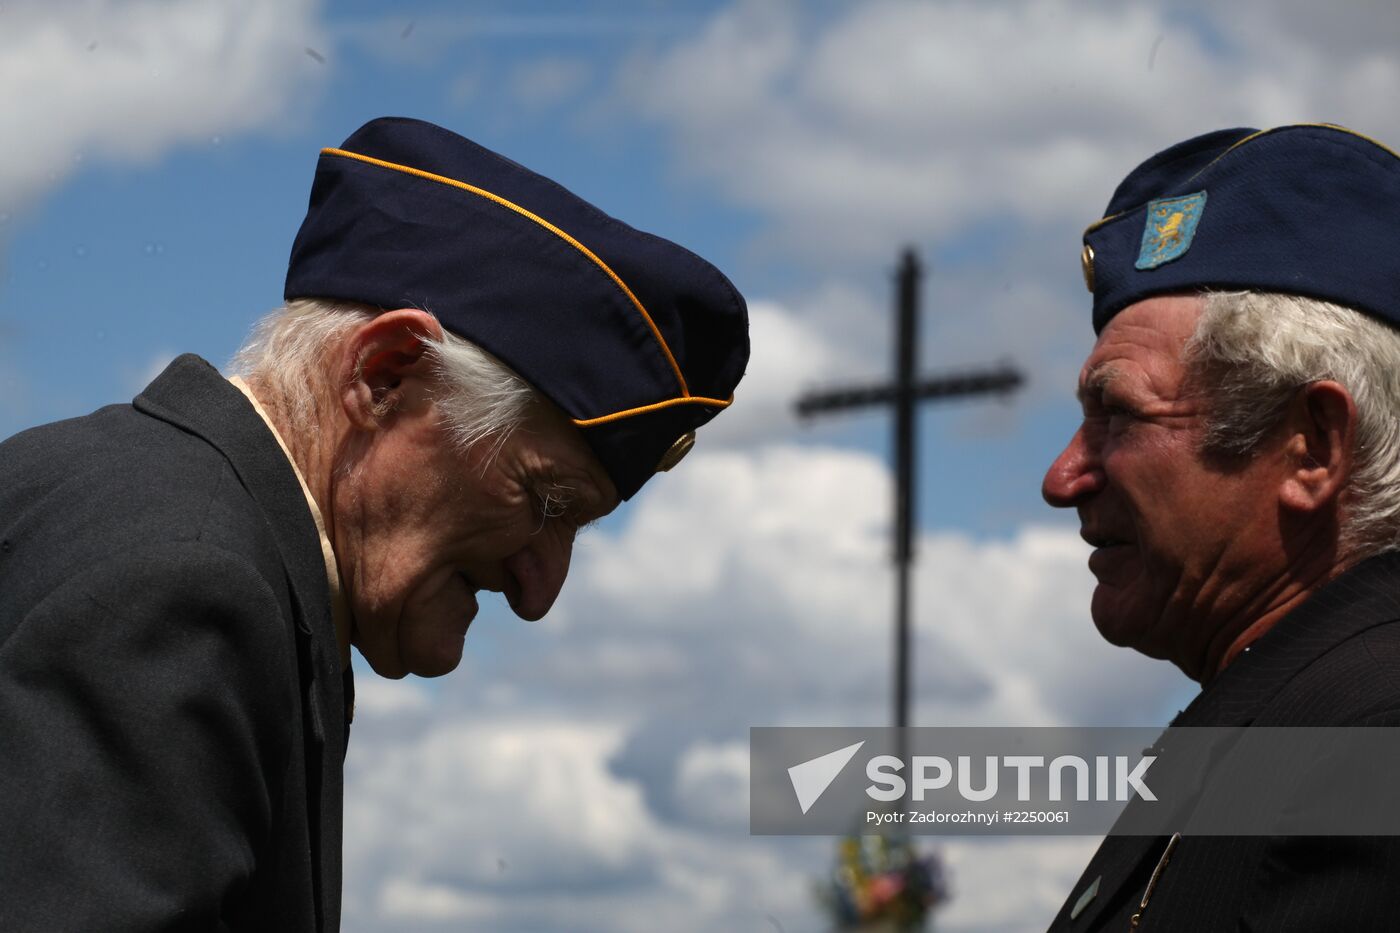 Honoring veterans of Waffen-SS Division Galichina in Ukraine